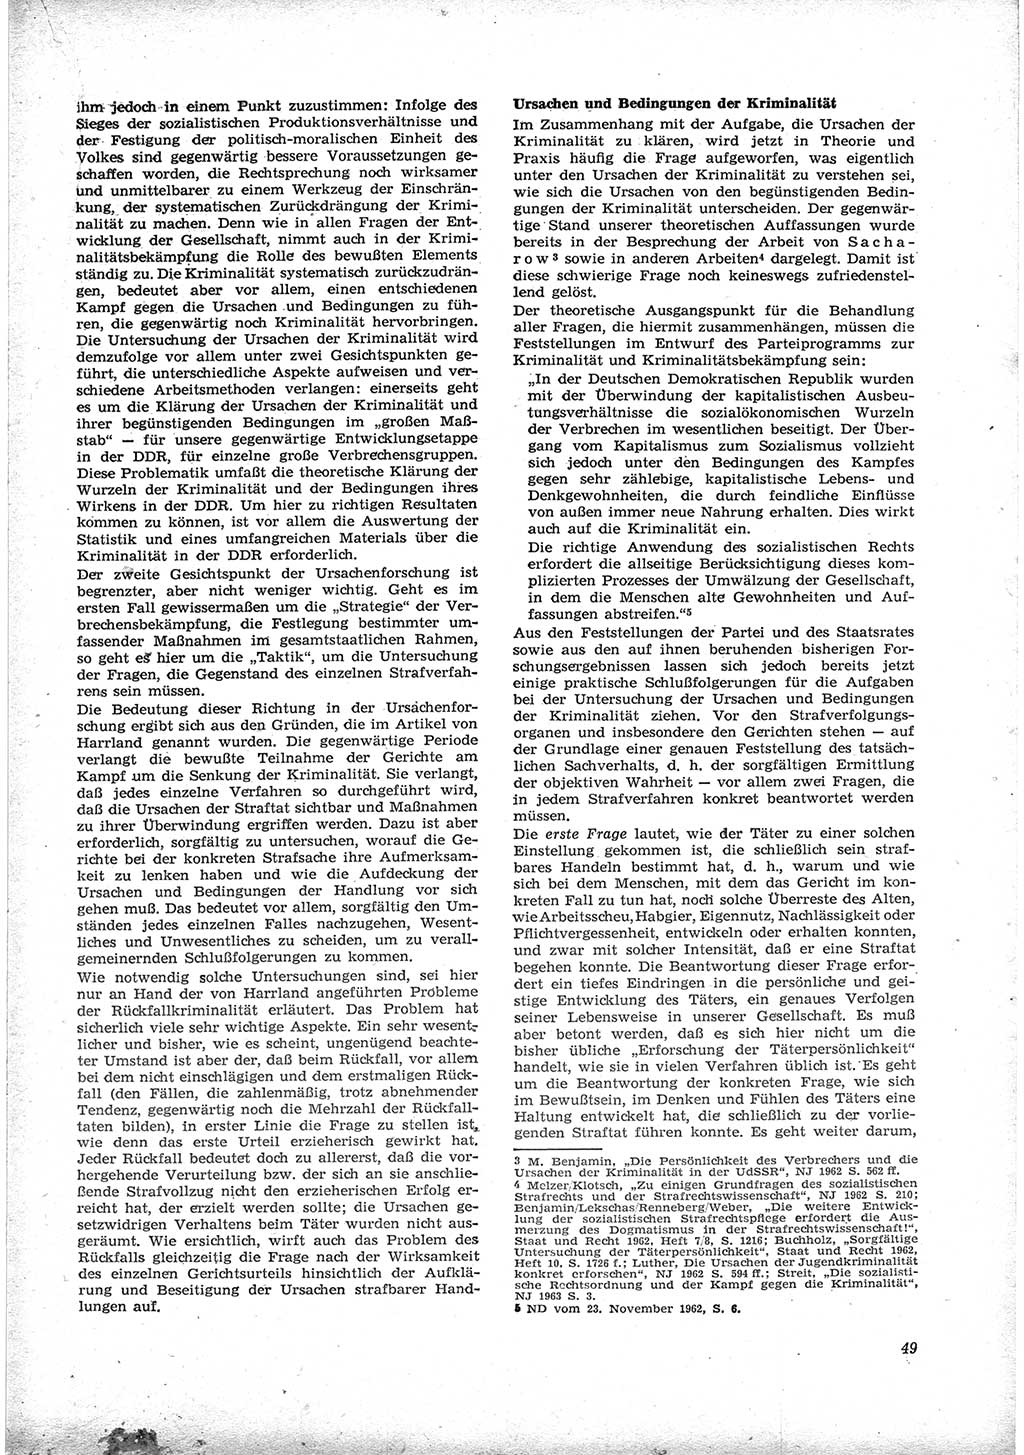 Neue Justiz (NJ), Zeitschrift für Recht und Rechtswissenschaft [Deutsche Demokratische Republik (DDR)], 17. Jahrgang 1963, Seite 49 (NJ DDR 1963, S. 49)